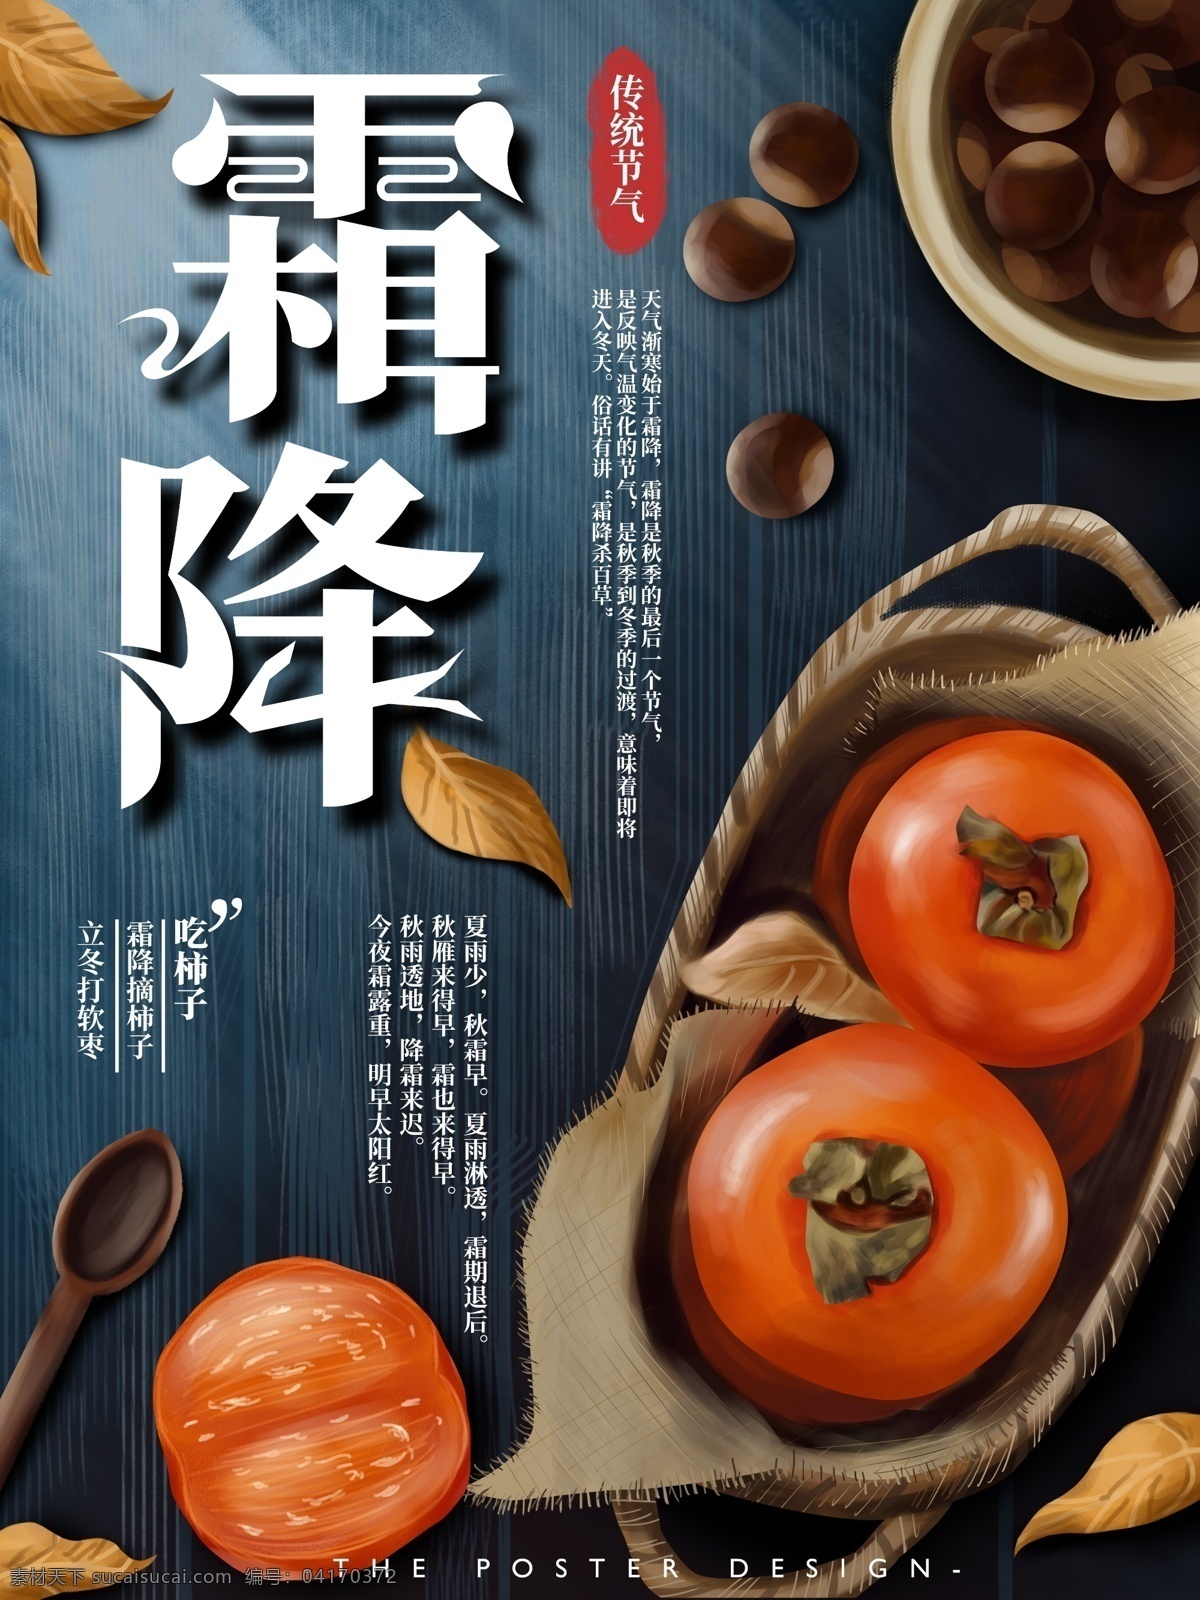 原创 手绘 霜降 节气 宣传海报 中国传统 节日 习俗风俗 柿子 复古 肌理感 中国风 落叶 节日海报